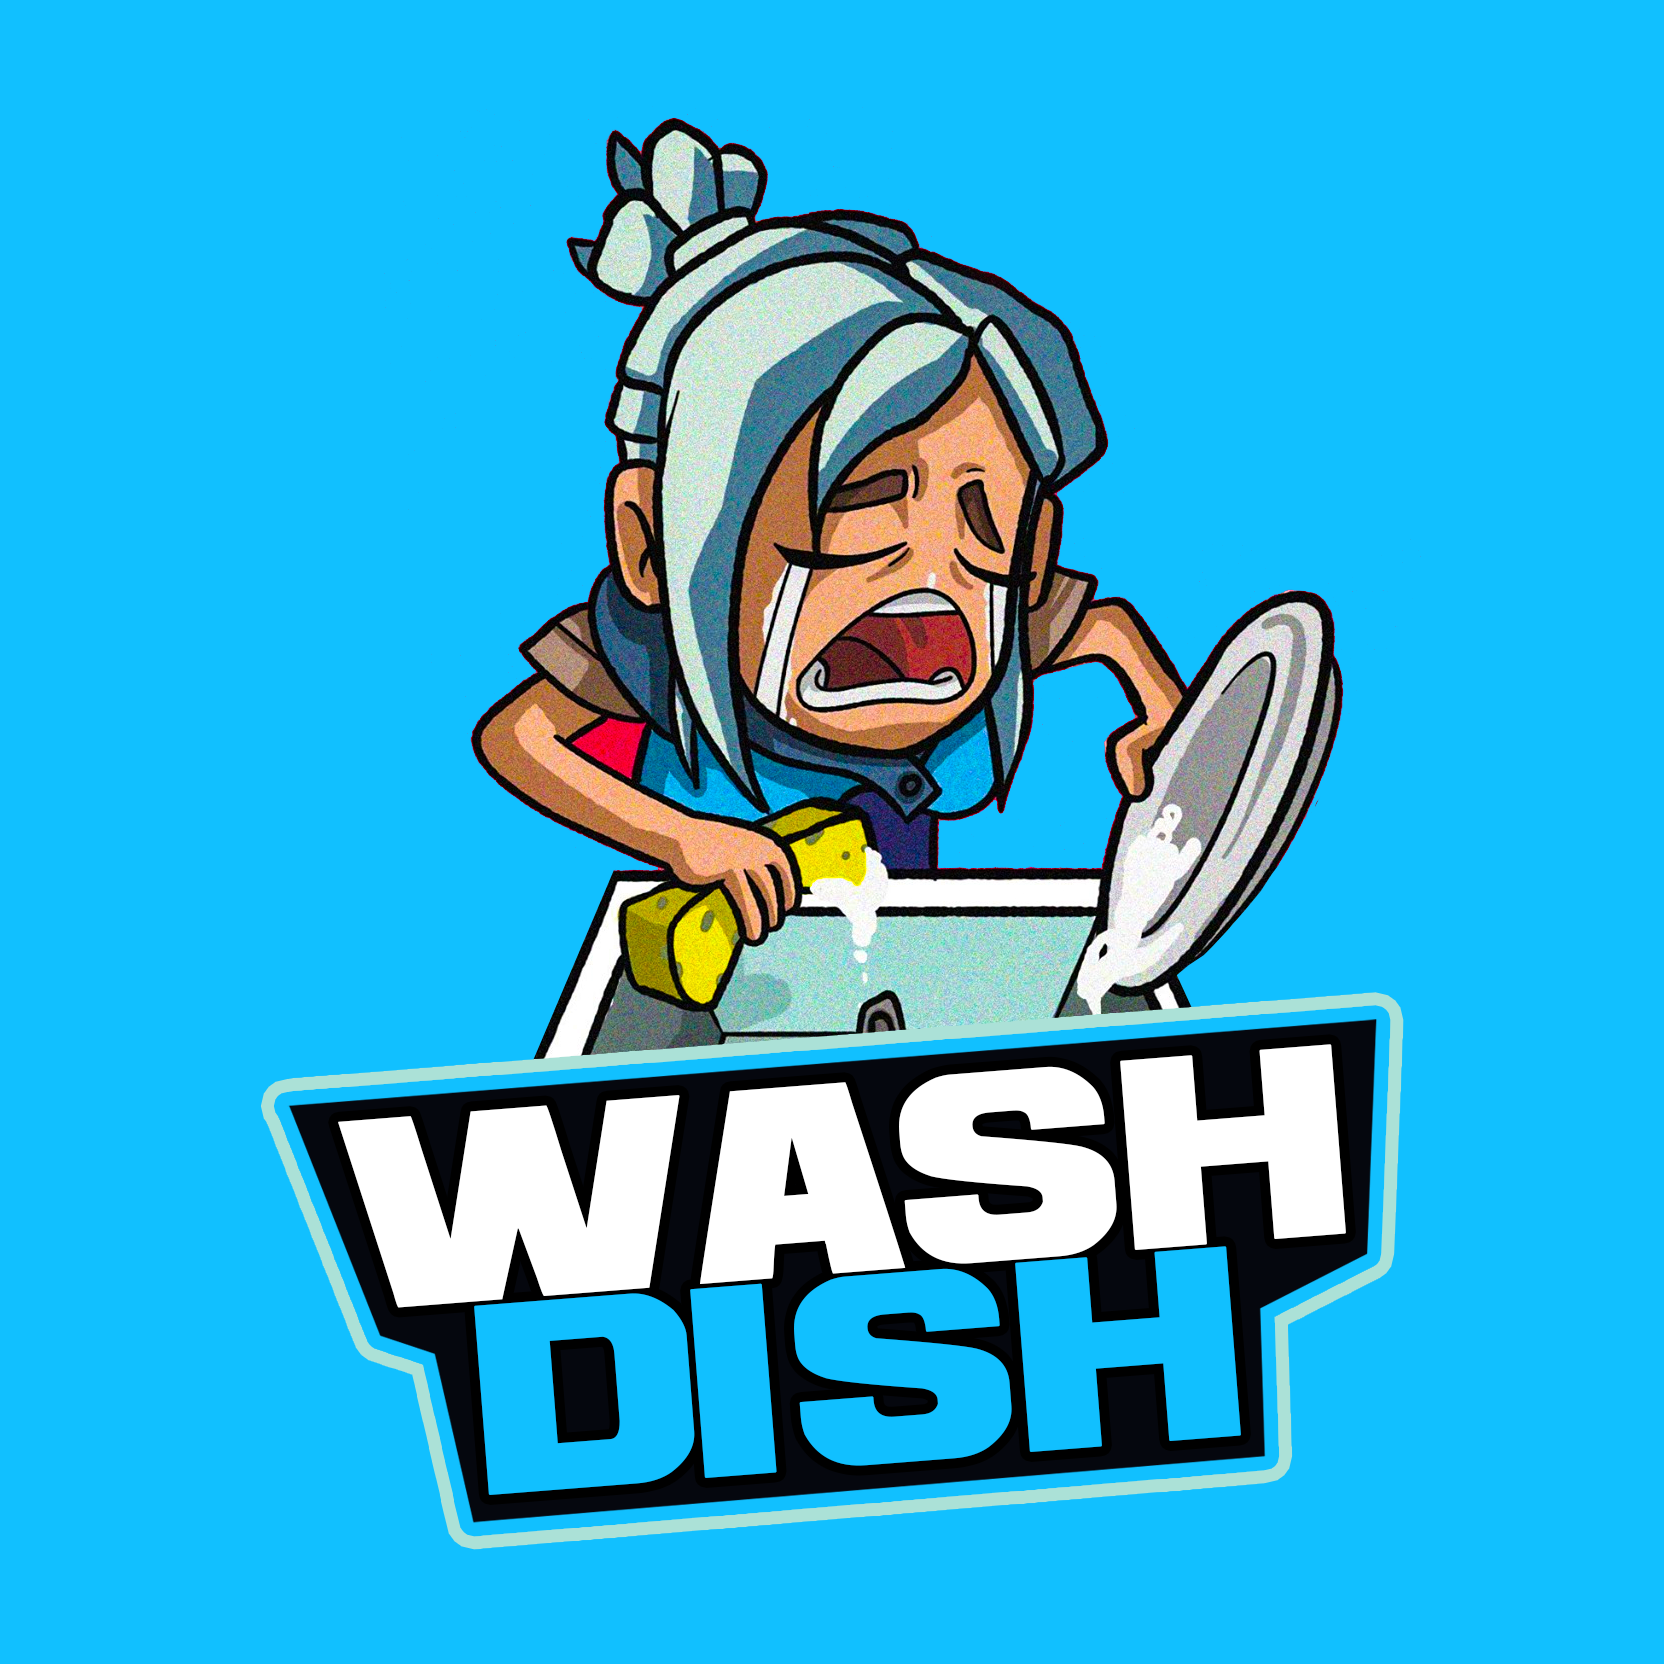 Wash Dish